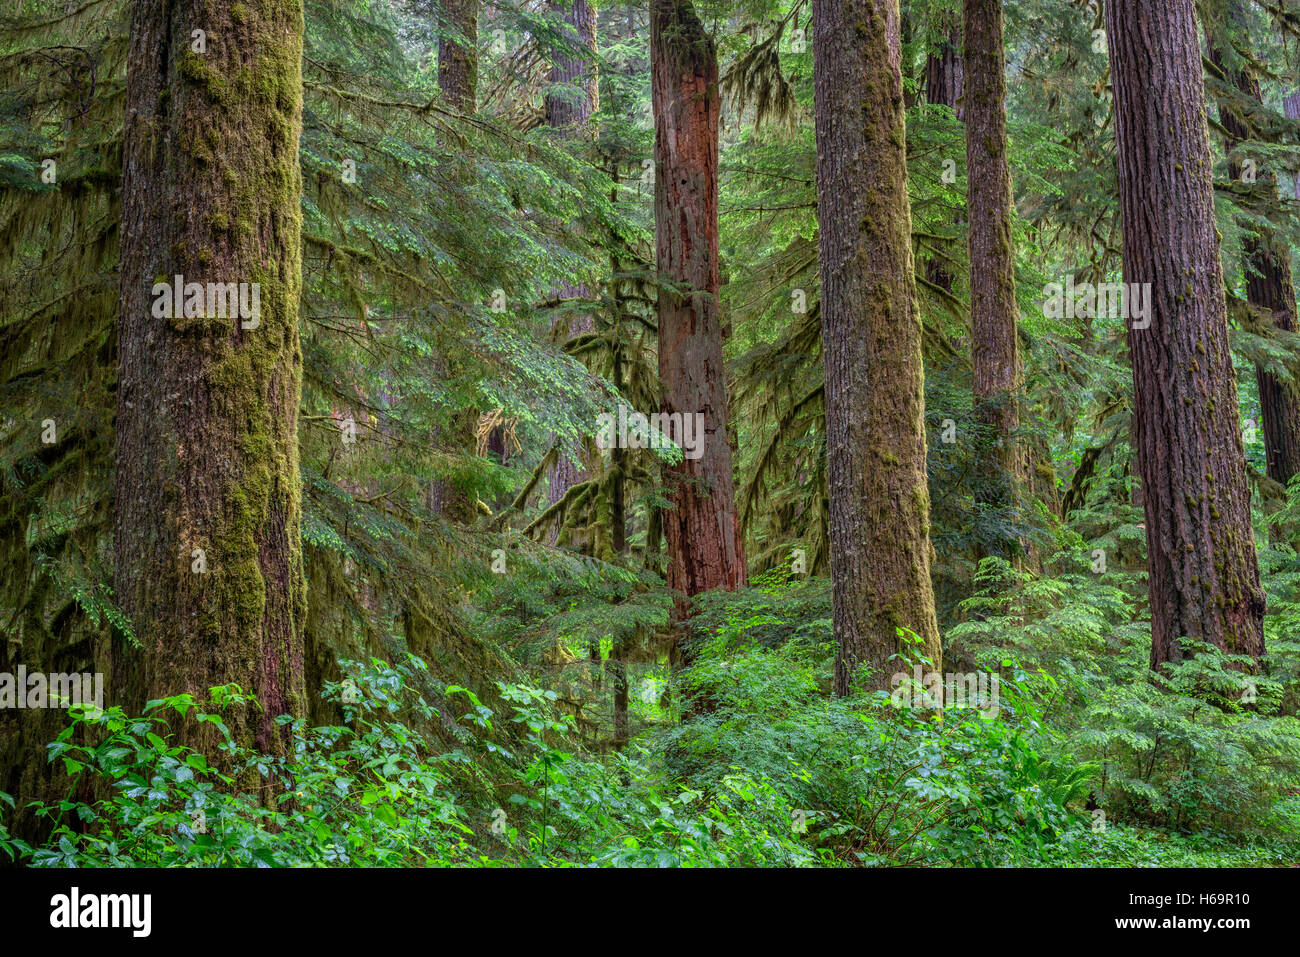 USA, Oregon, el Bosque Nacional de Willamette, Opal Creek Wilderness, exuberantes, antiguos bosques de abetos Douglas y Hemlock Occidental. Foto de stock